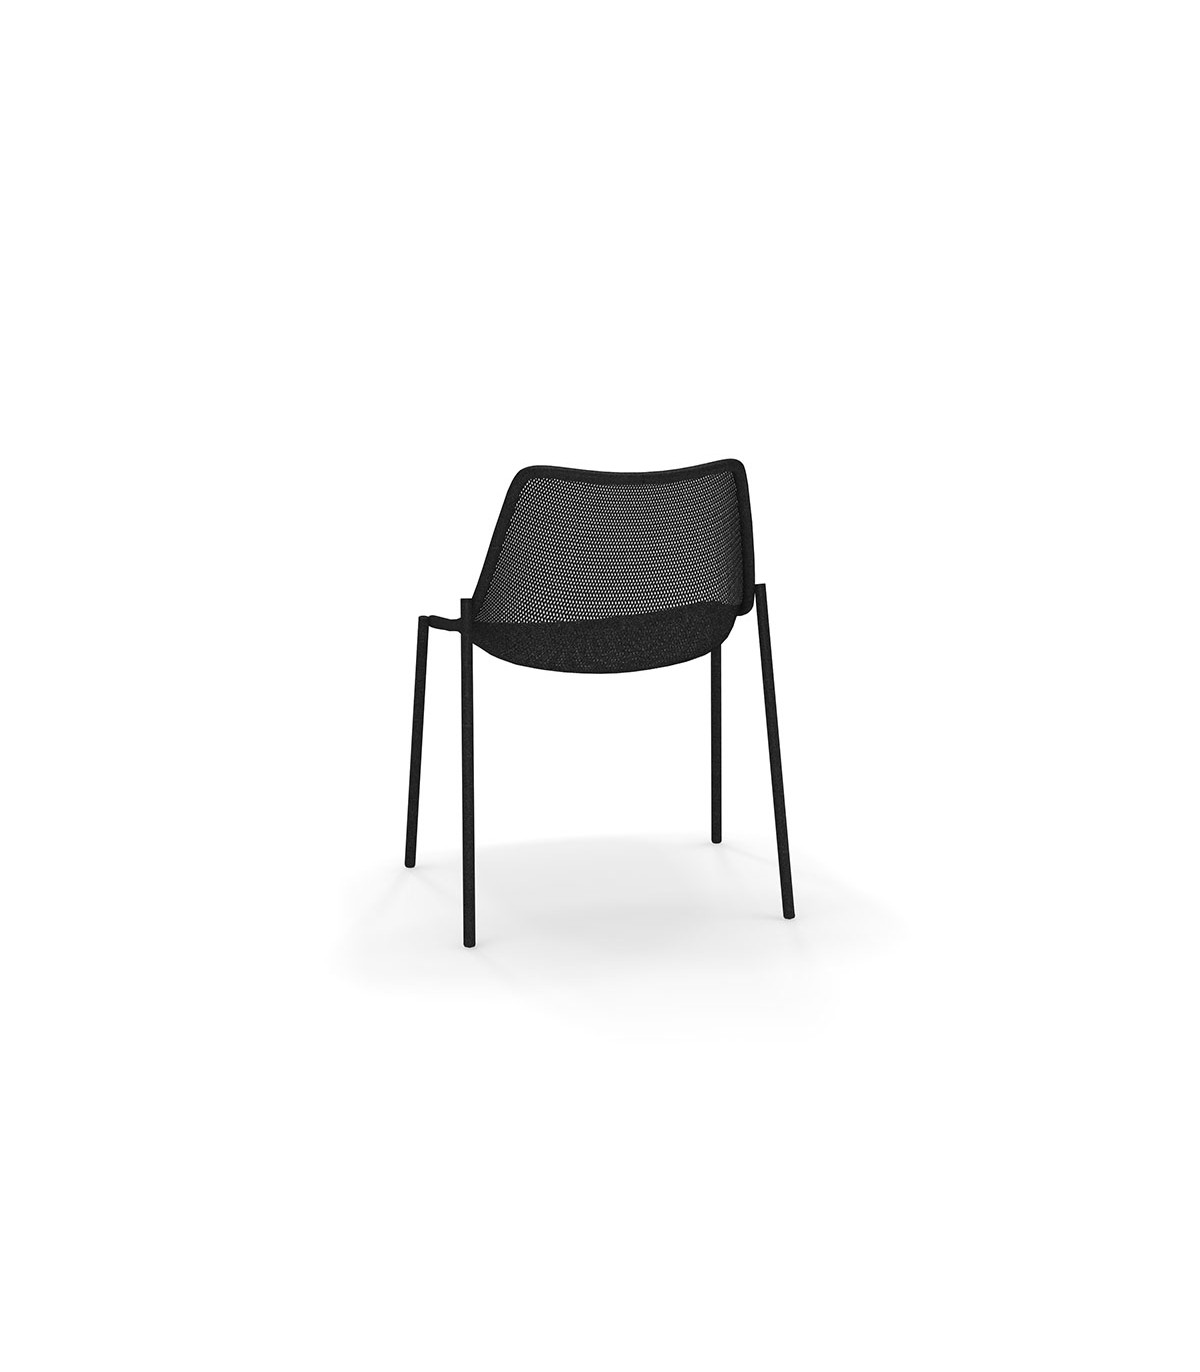 Roest Aanzienlijk blaas gat Round chair | EMU , Italian outdoor furniture | Carlakey